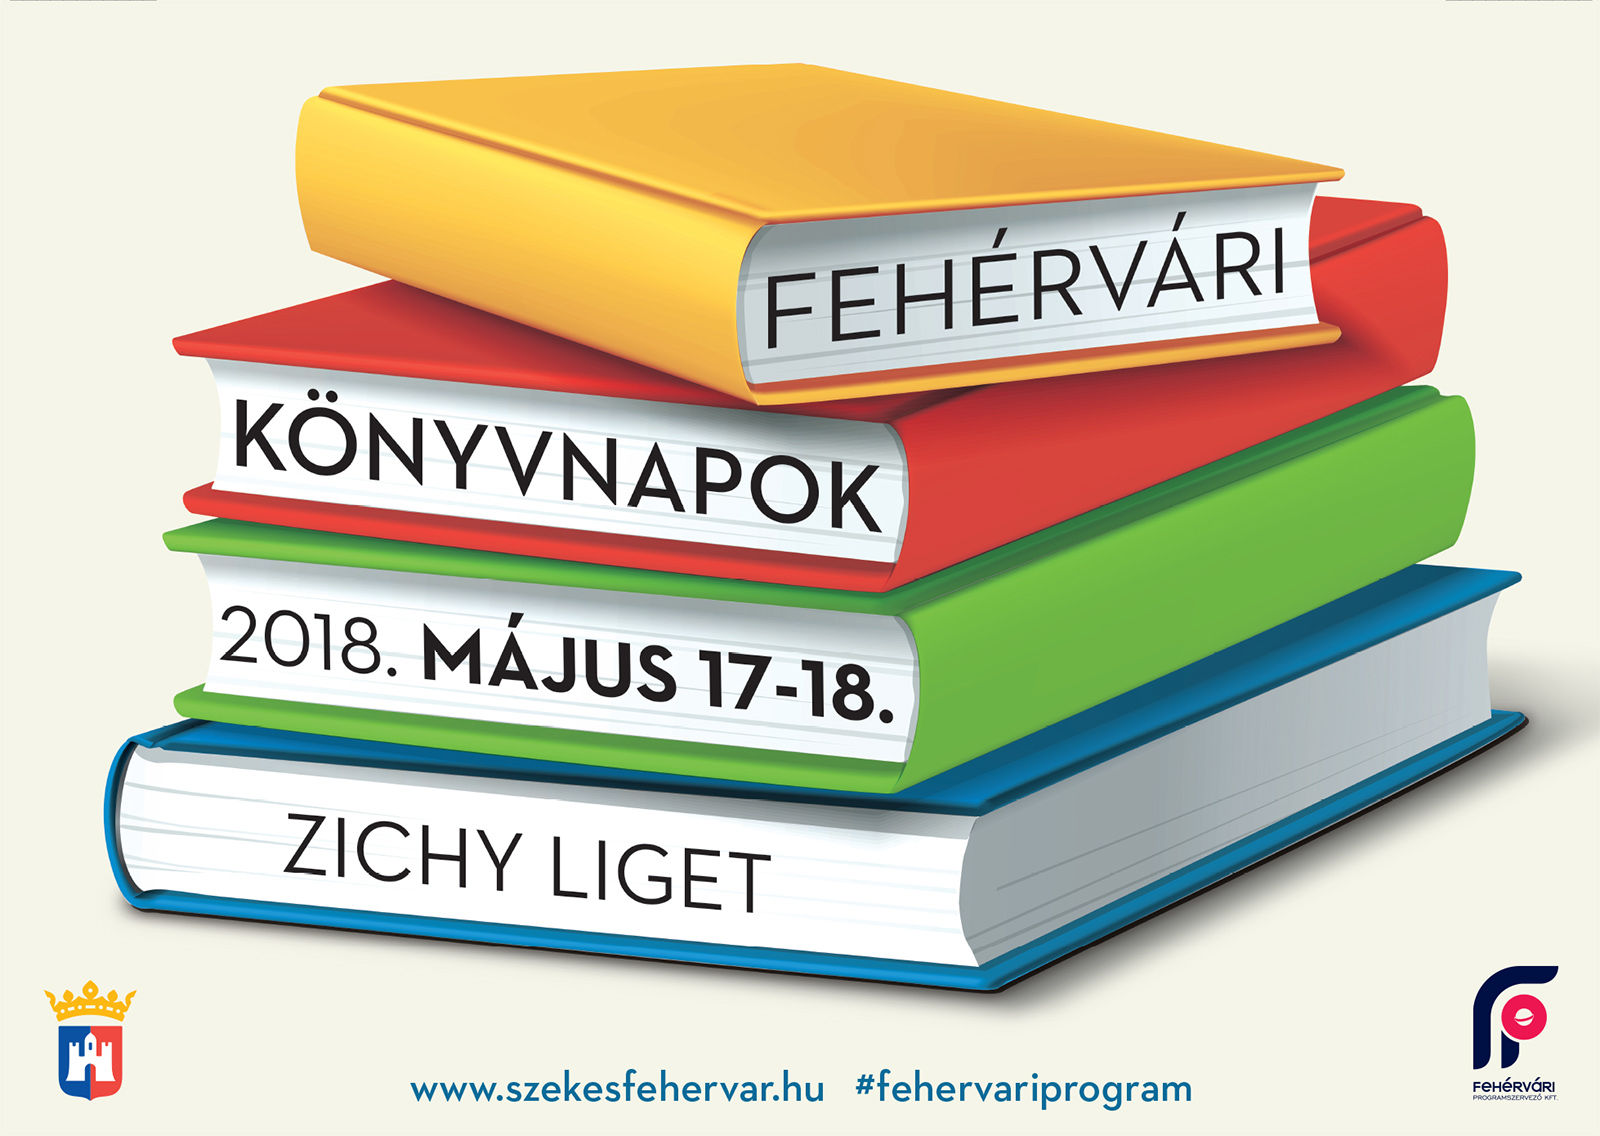 Fehérvári Könyvnapok 2018 - ma kezdődnek a programok a Zichy ligetben